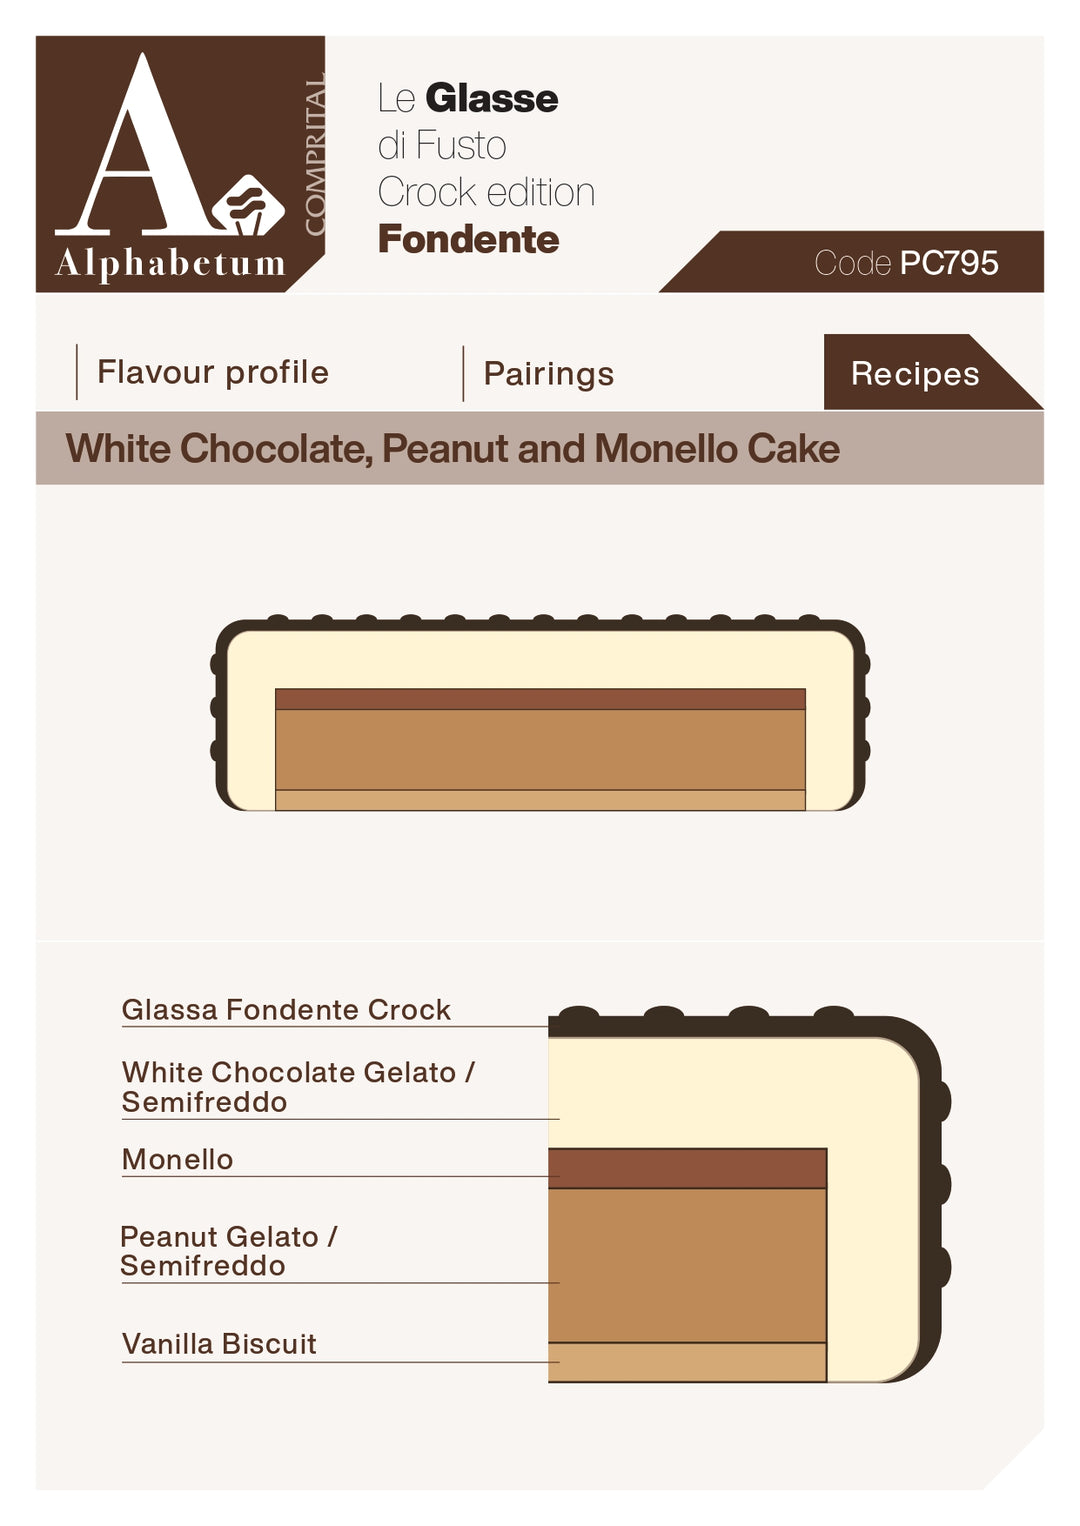 La Glassa Fondente Crock (dark chocolate with cocoa nibs) - Glazing Pastes (Le glasse di Fusto) - Case of 2 x 3 kg Units